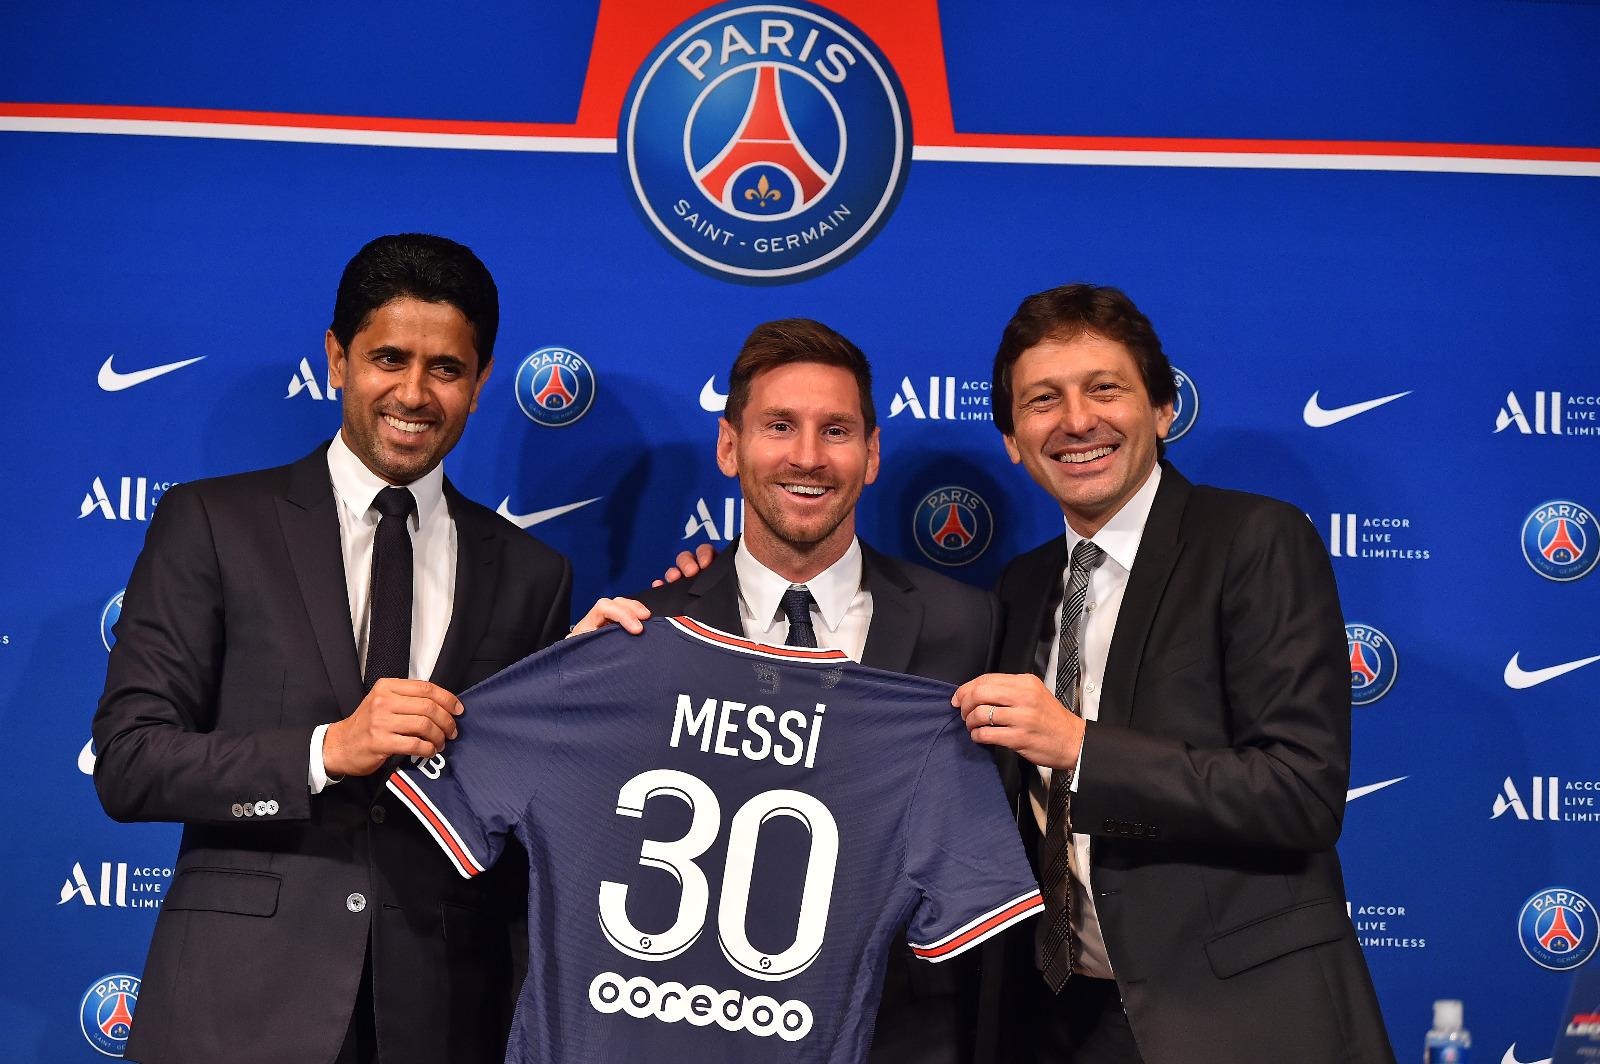 Messi: “Mi sueño es levantar otra Champions y creo que he llegado al lugar ideal” (VIDEO)